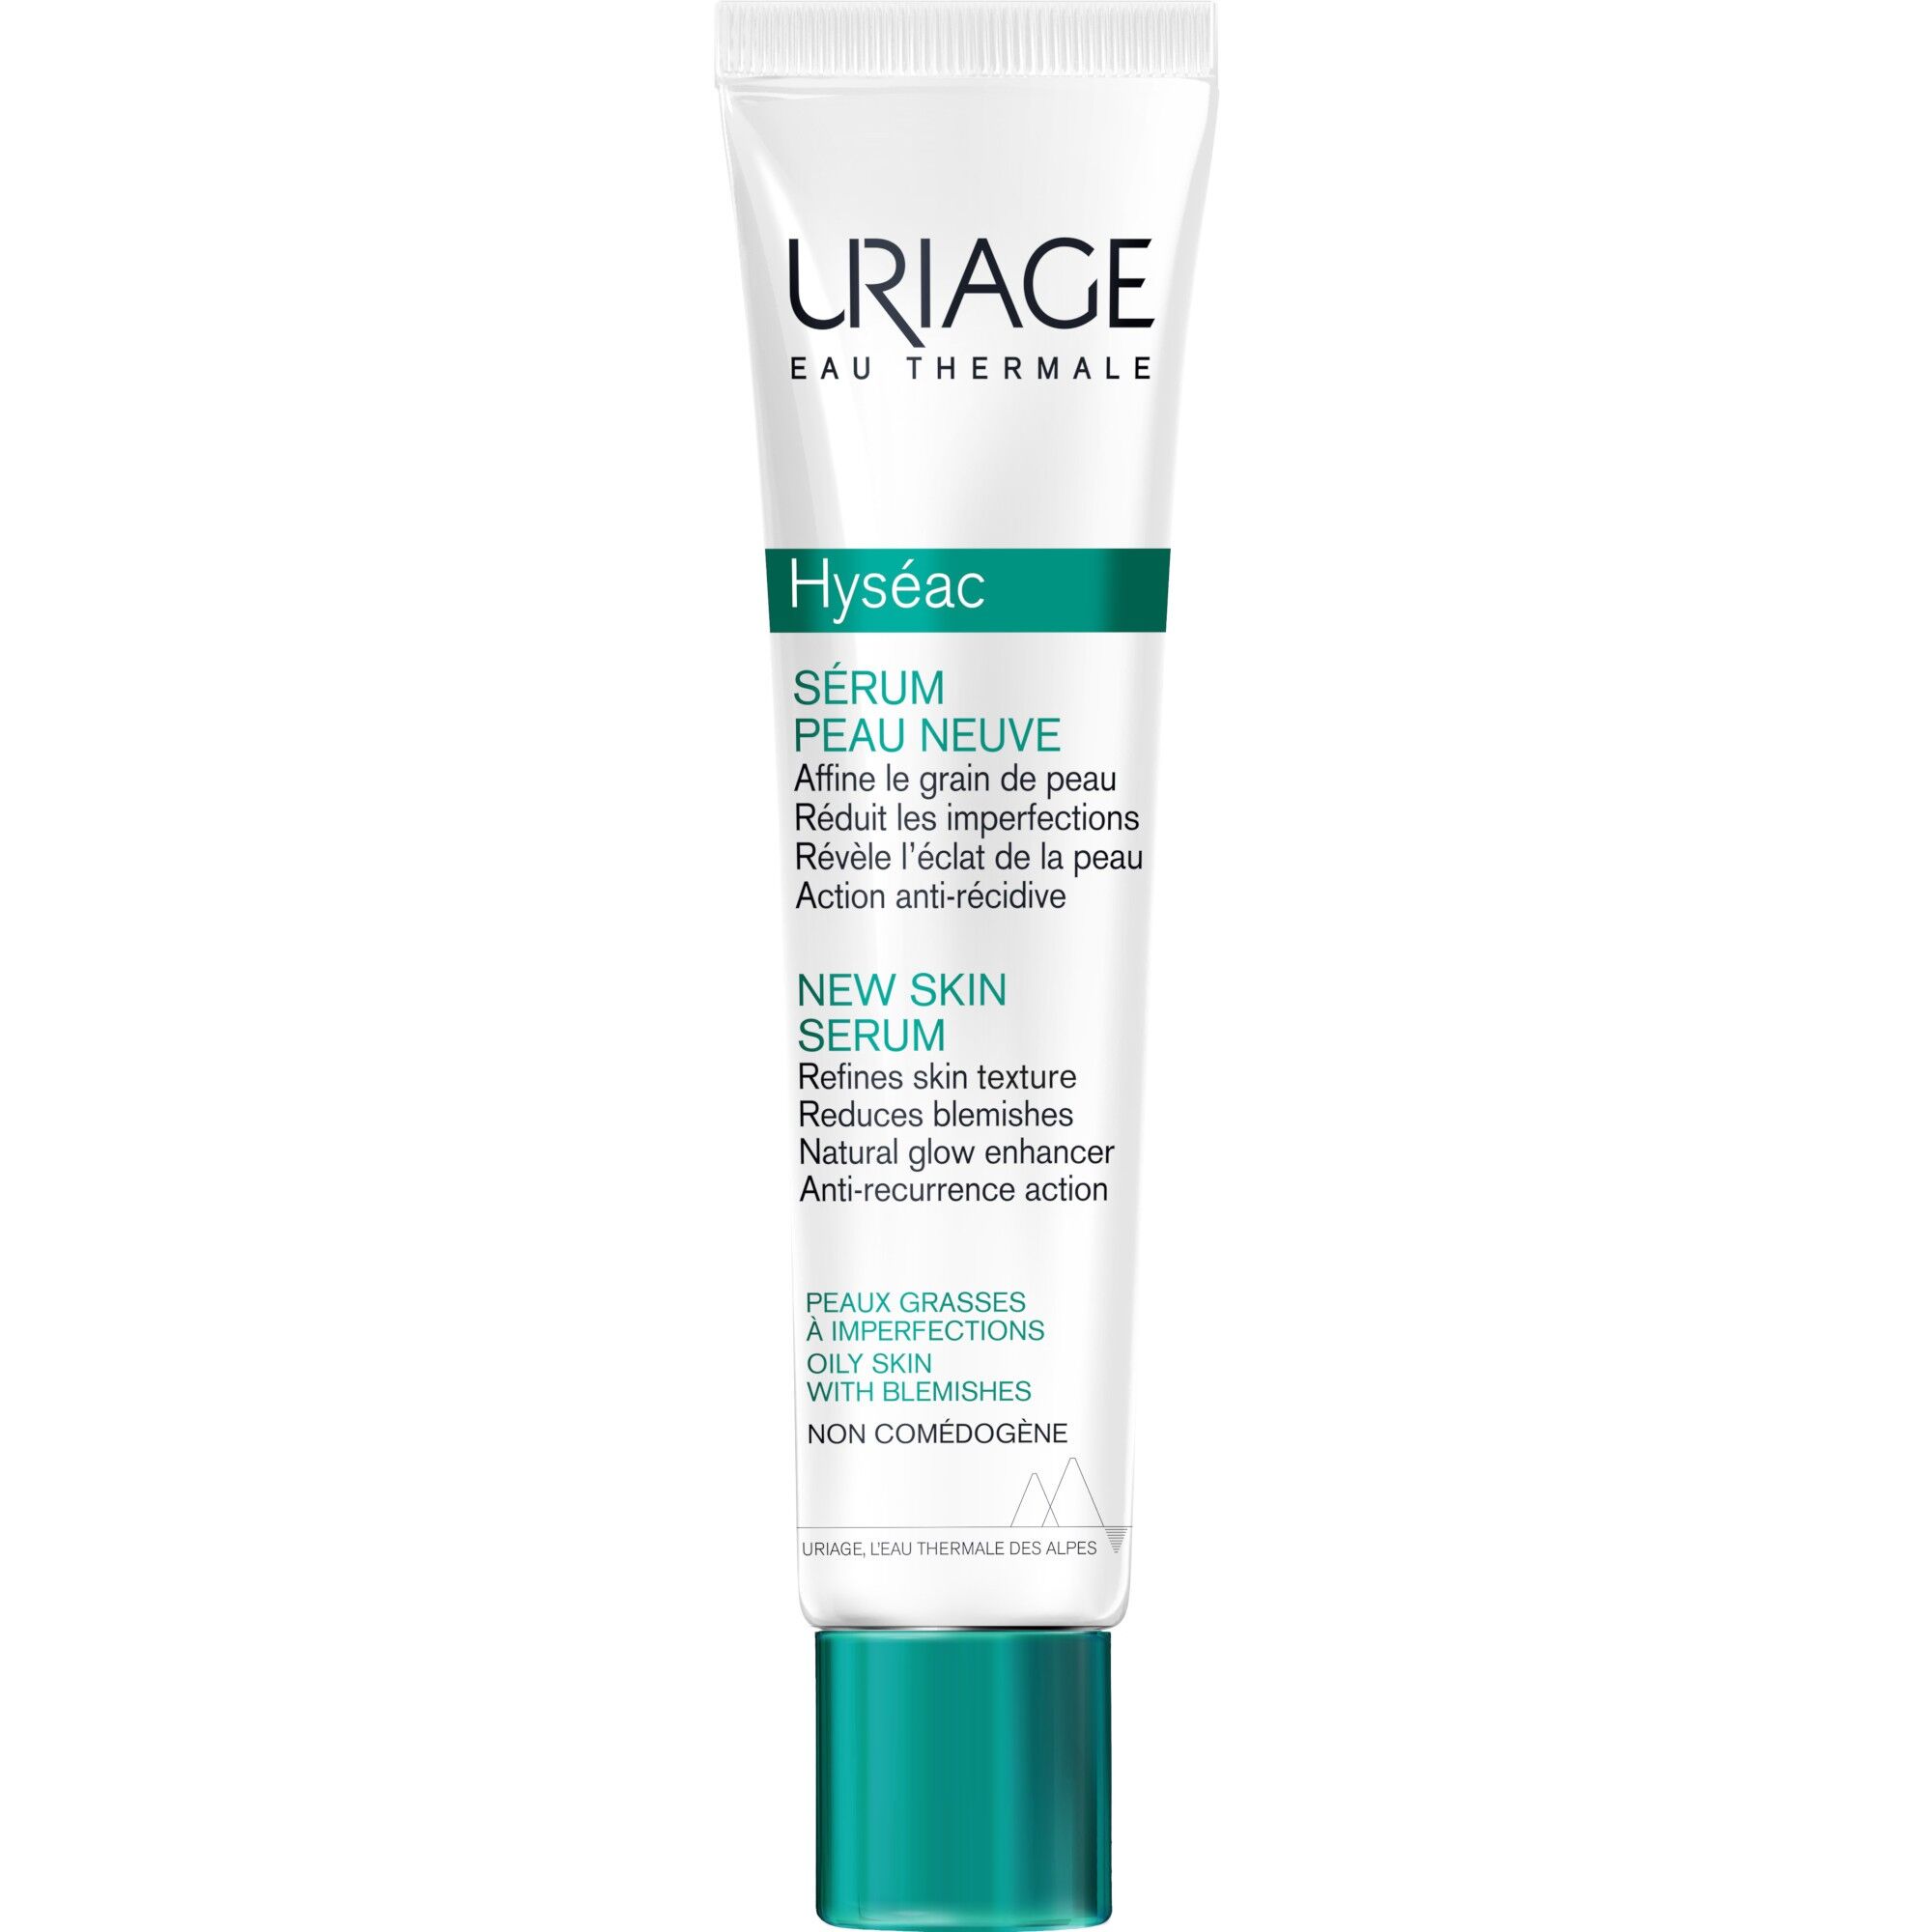 uriage hyséac - siero rinnovatore 40ml, trattamento viso per pelle grassa e imperfezioni